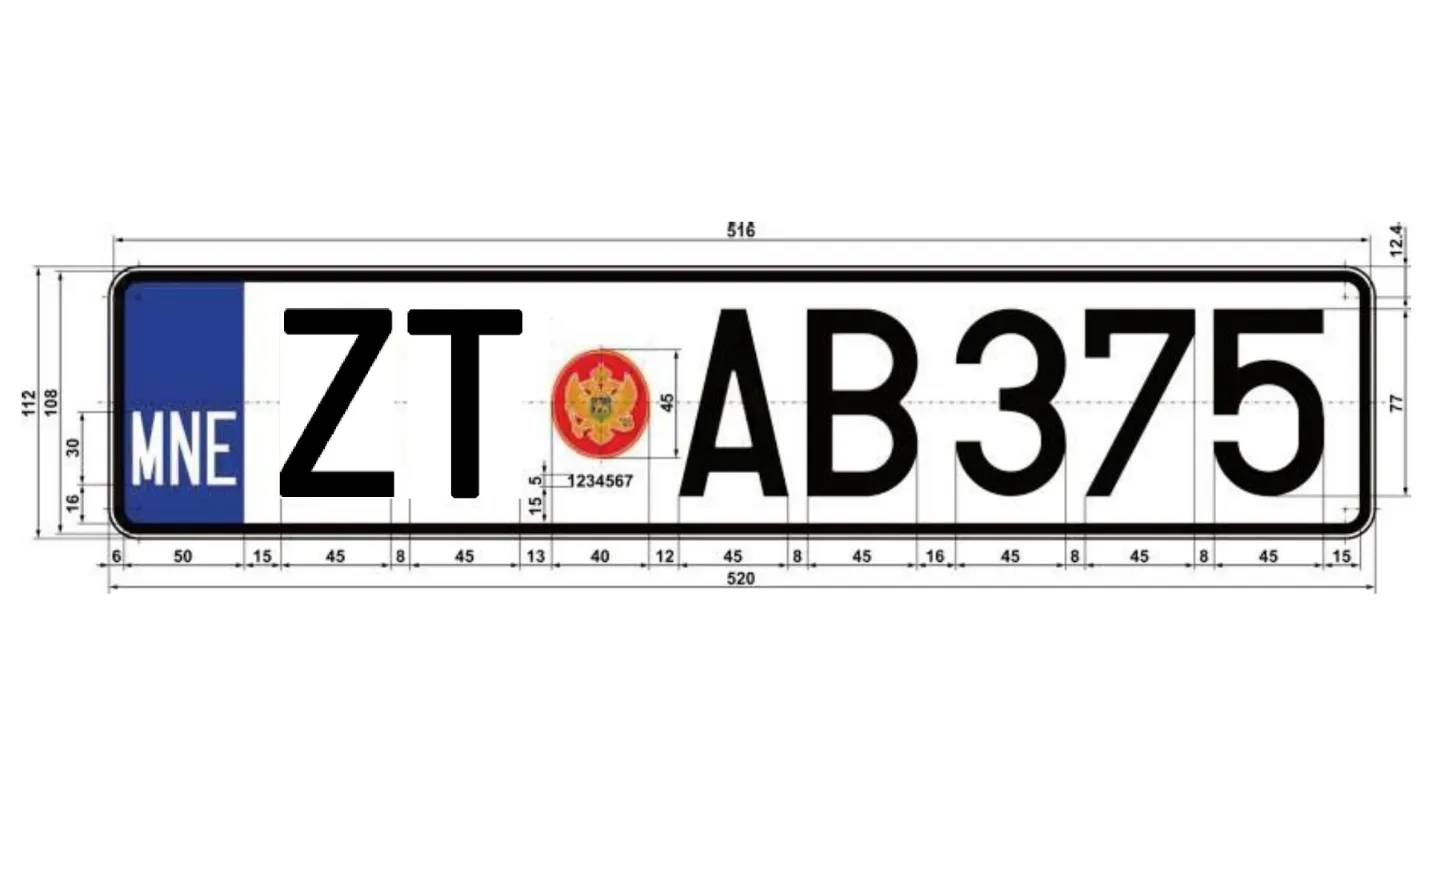 Регистарске таблице за моторна и прикључна возила са регистарскoм ознакам "ZT"